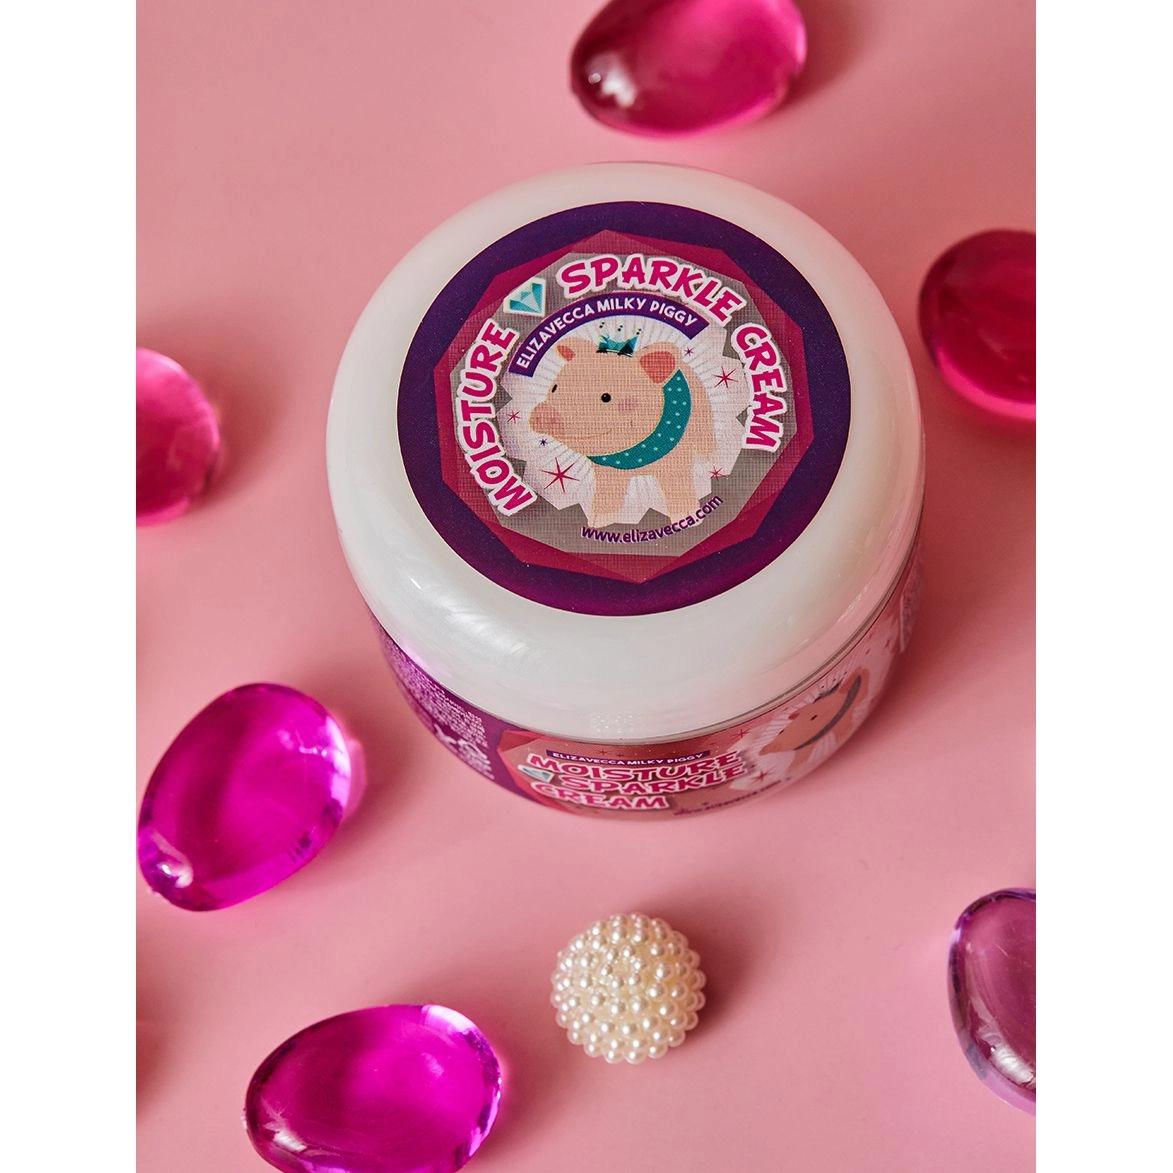 Крем для лица увлажняющий с эффектом сияния - Elizavecca Face Care Milky Piggy Moisture Sparkle Cream, 100 г - фото N7